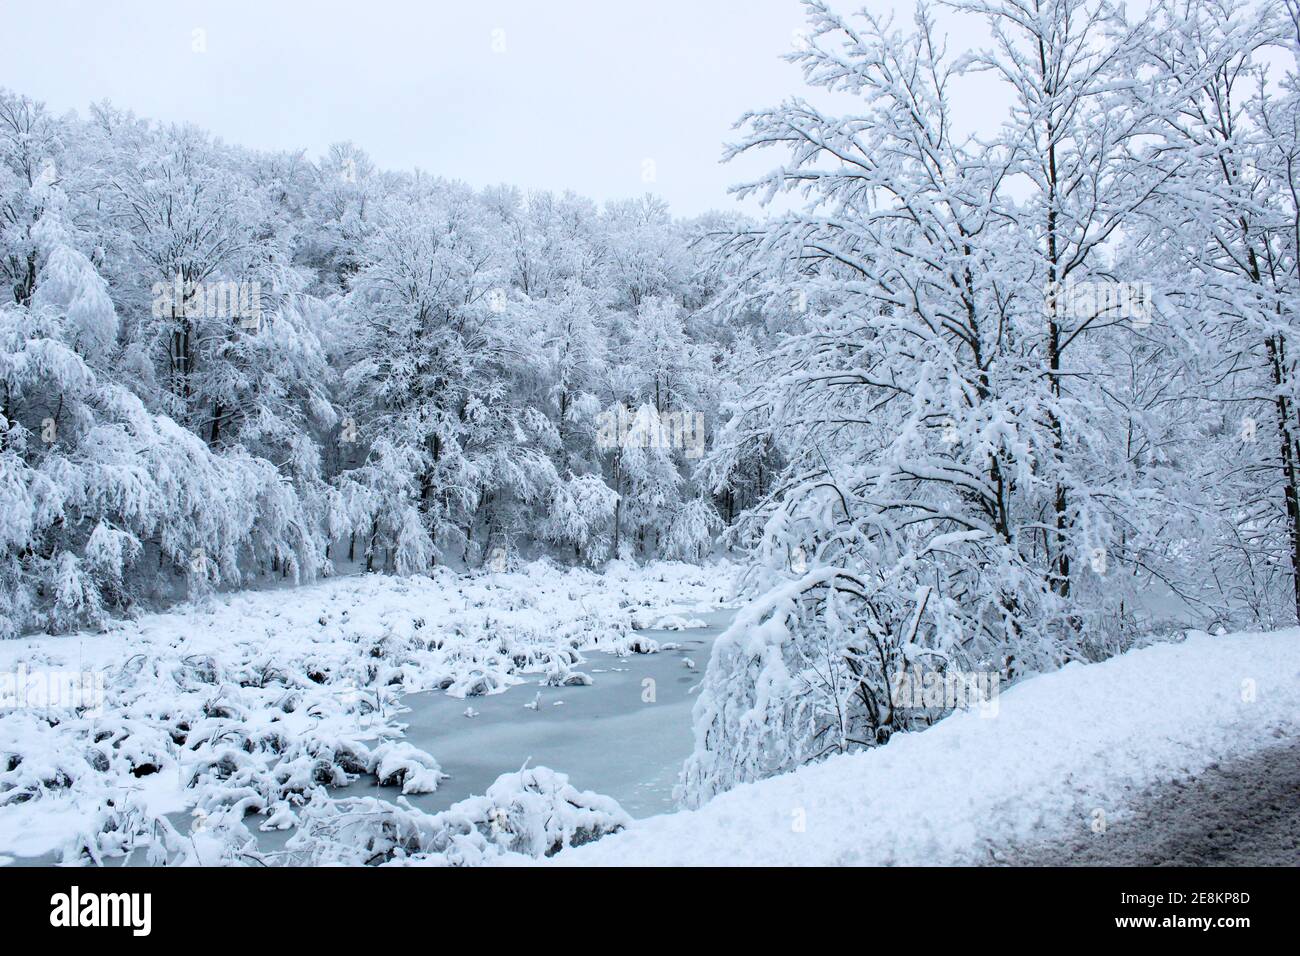 La neige est lourde sur les arbres dans la région rurale du nord de la Pennsylvanie, aux États-Unis Banque D'Images